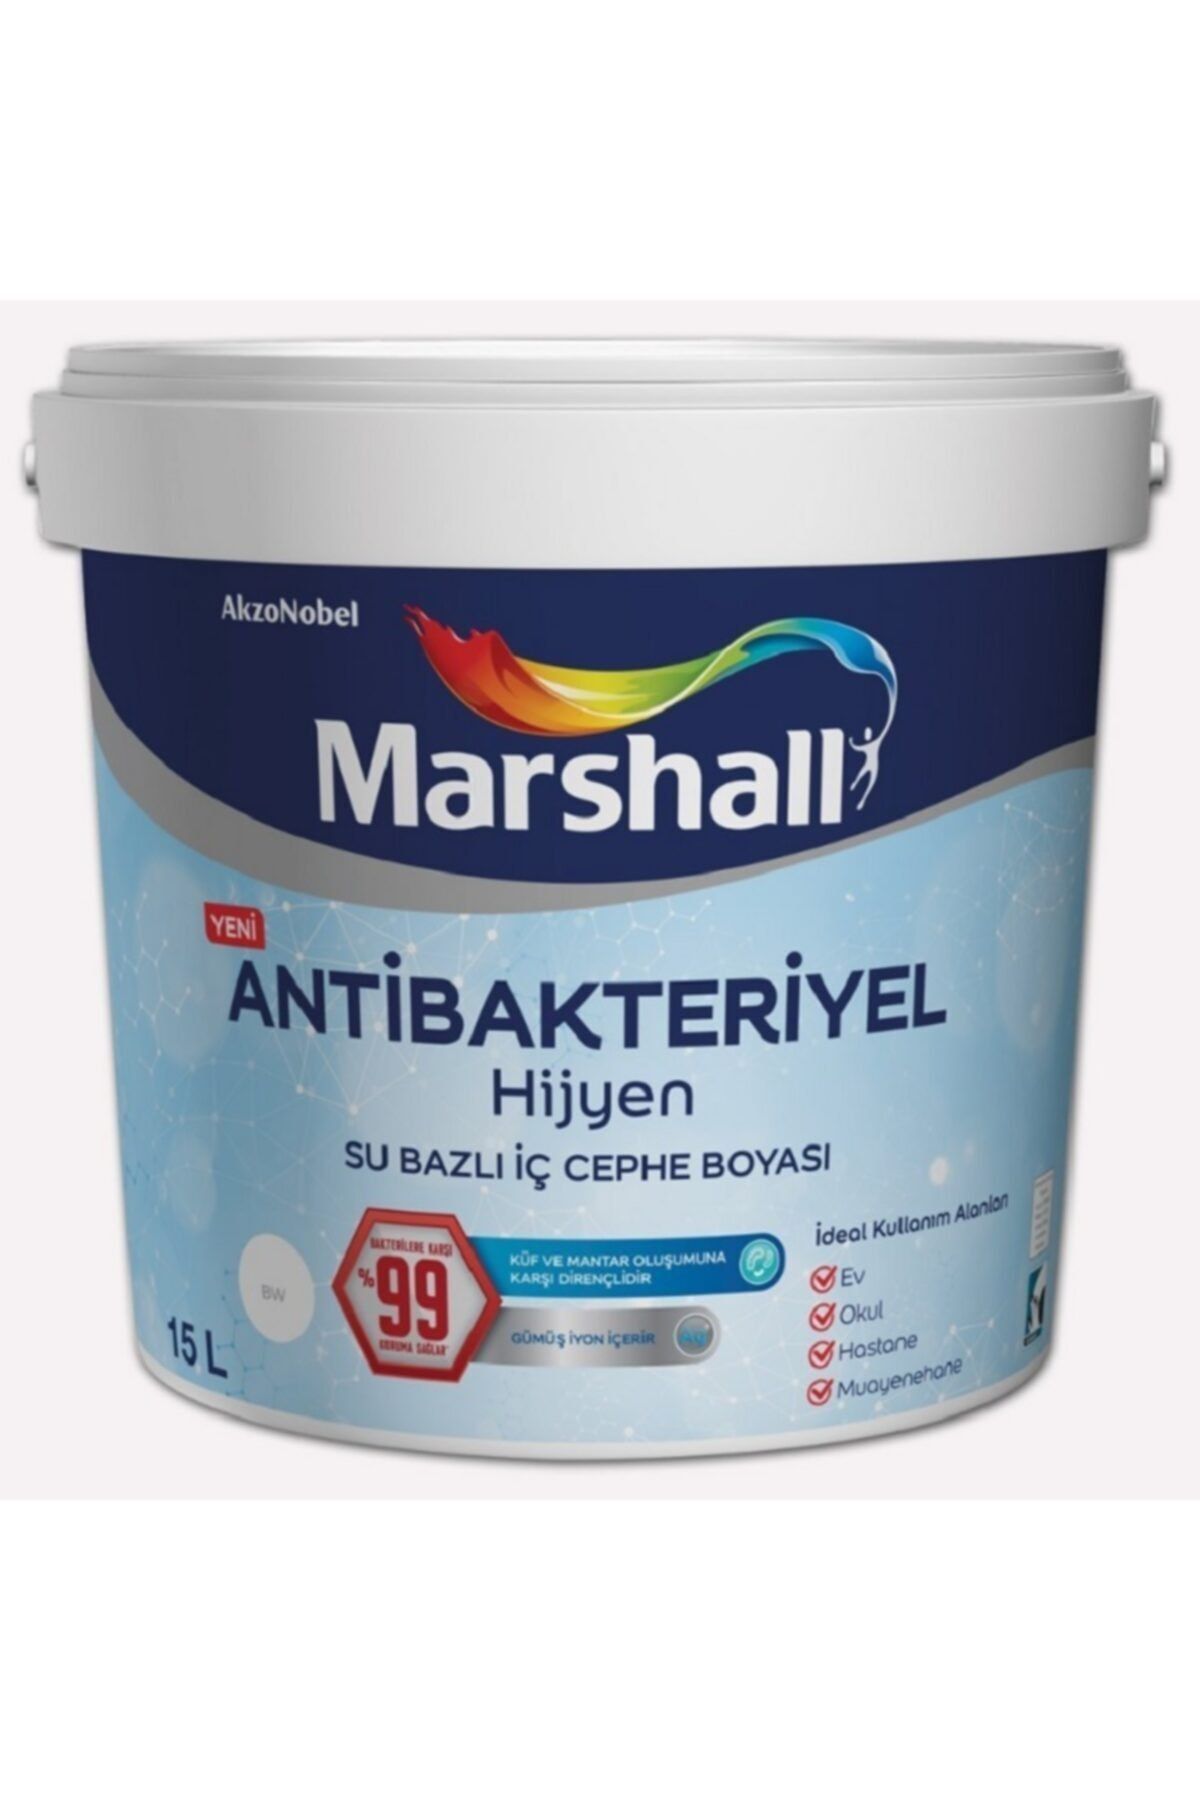 Marshall Antibakteriyel Hijyen Iç Cephe Duvar Boyası15 Lt (20kg) Kızıl Kum